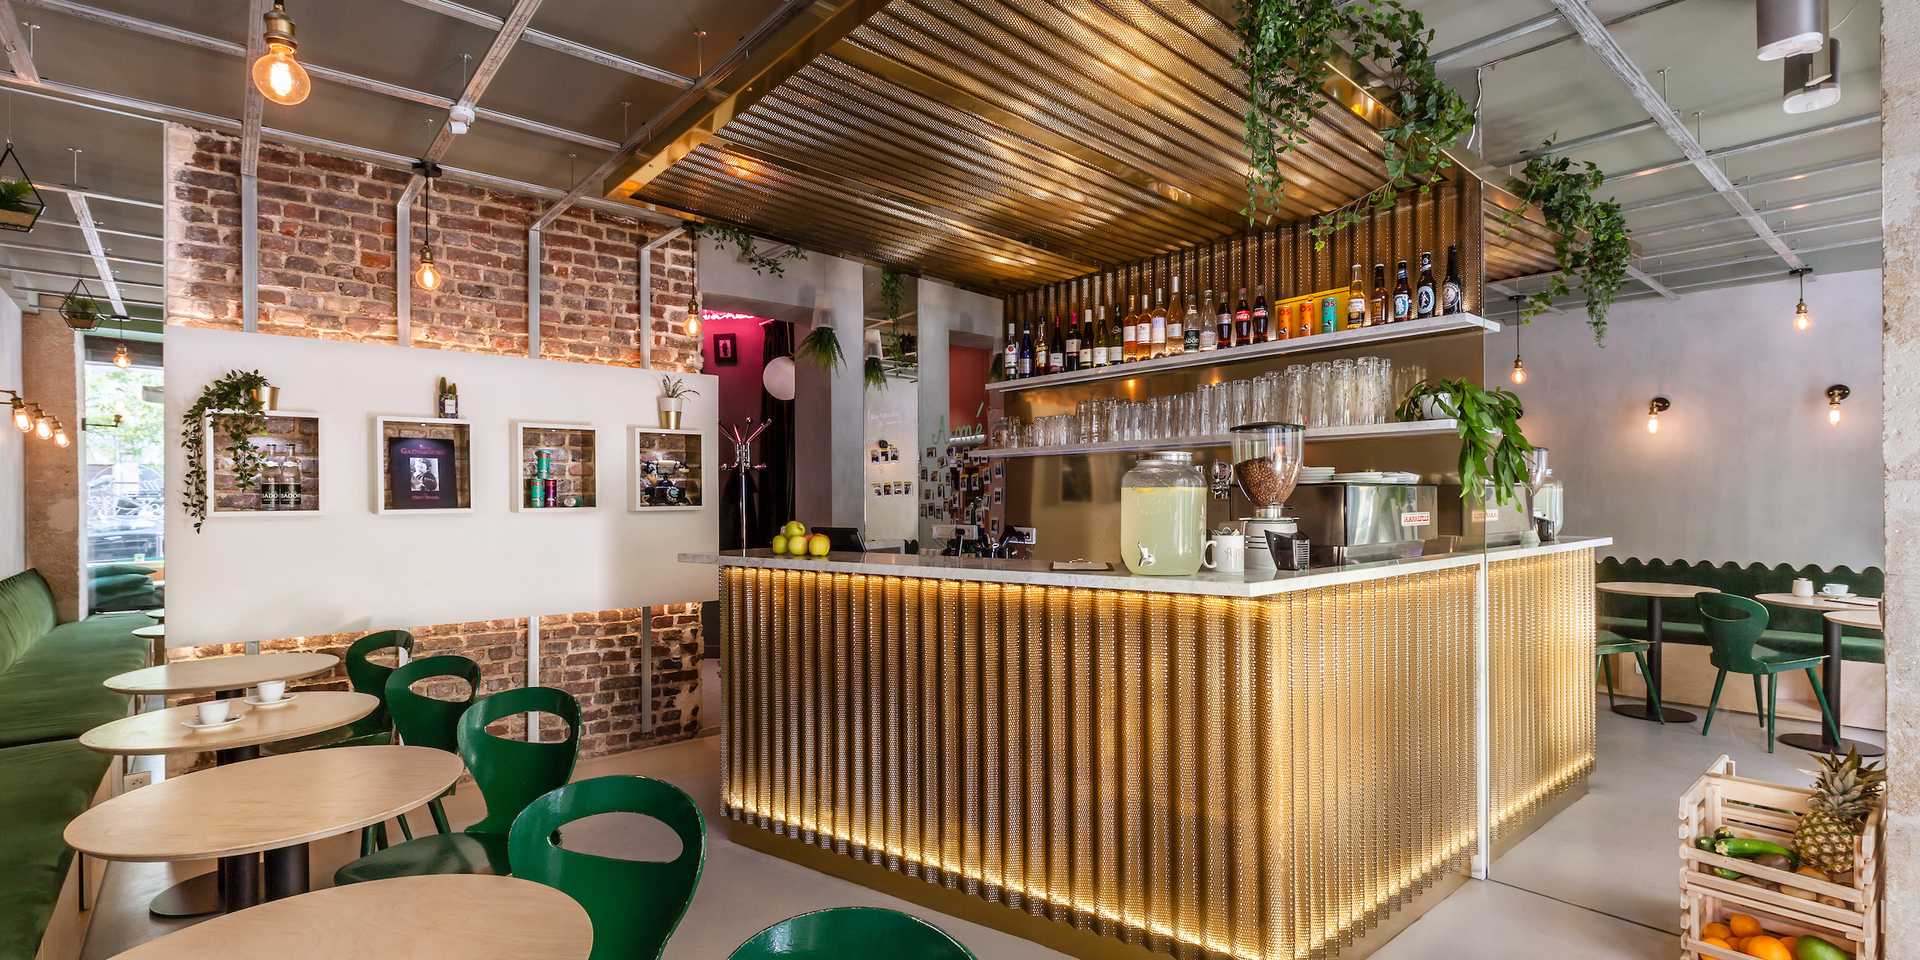 Coffee shop à Lille aménagé par un architecte spécialiste de l'architecture commerciale